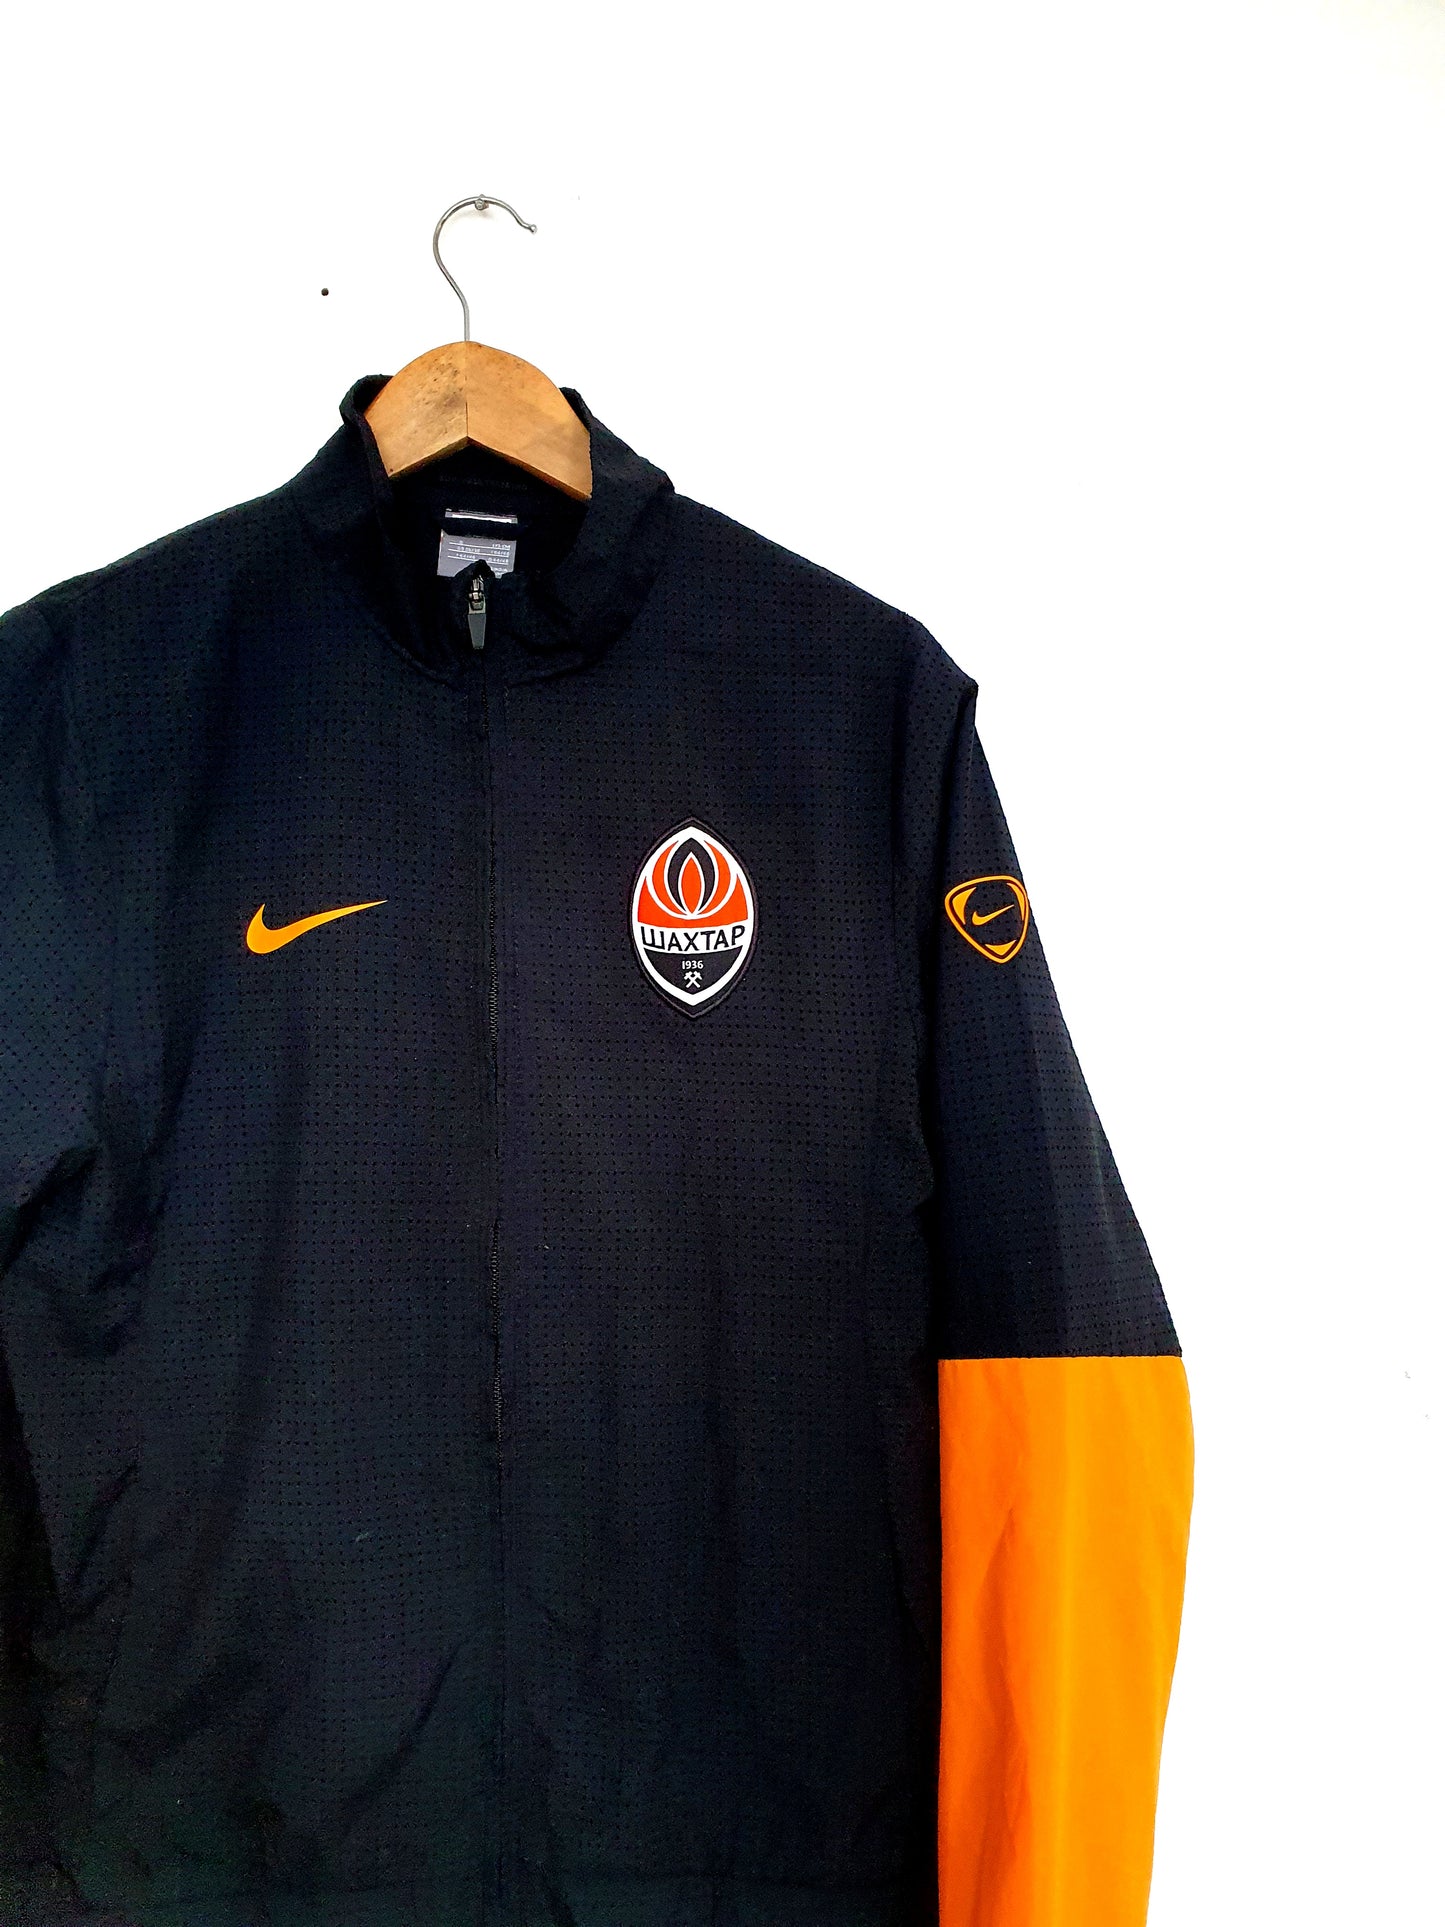 Nike Shakhtar Donetsk Track Jacket Small